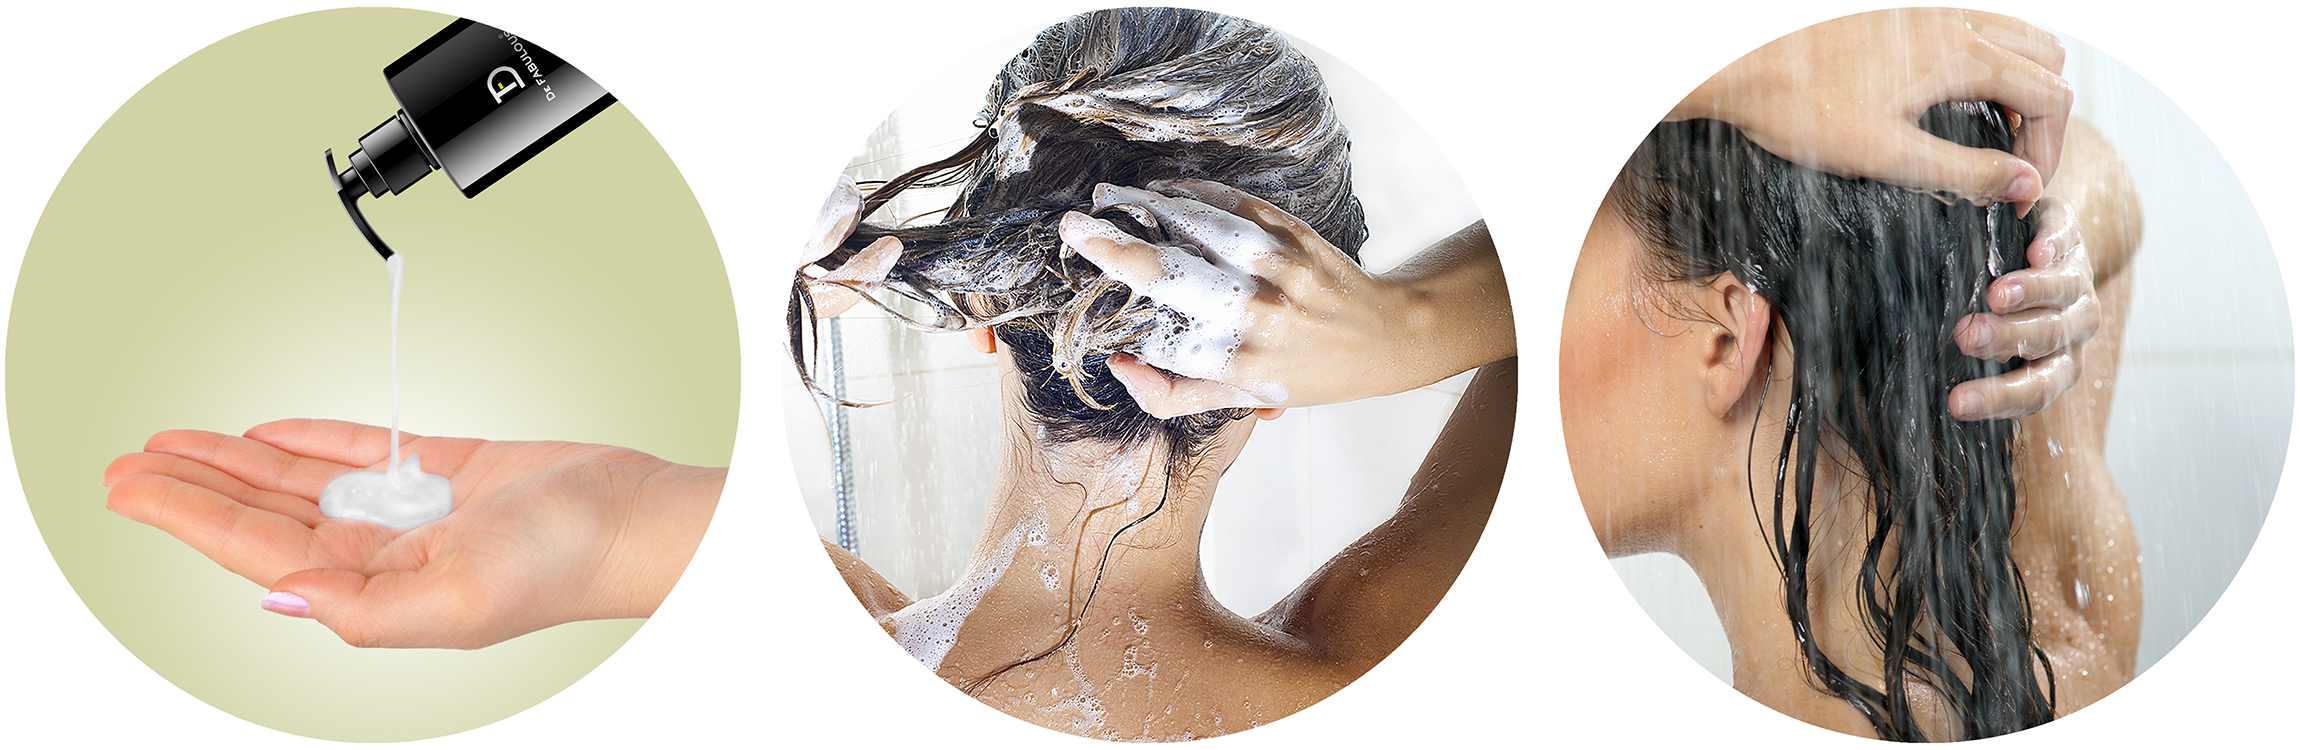 How to use Tea Tree Oil Shampoo